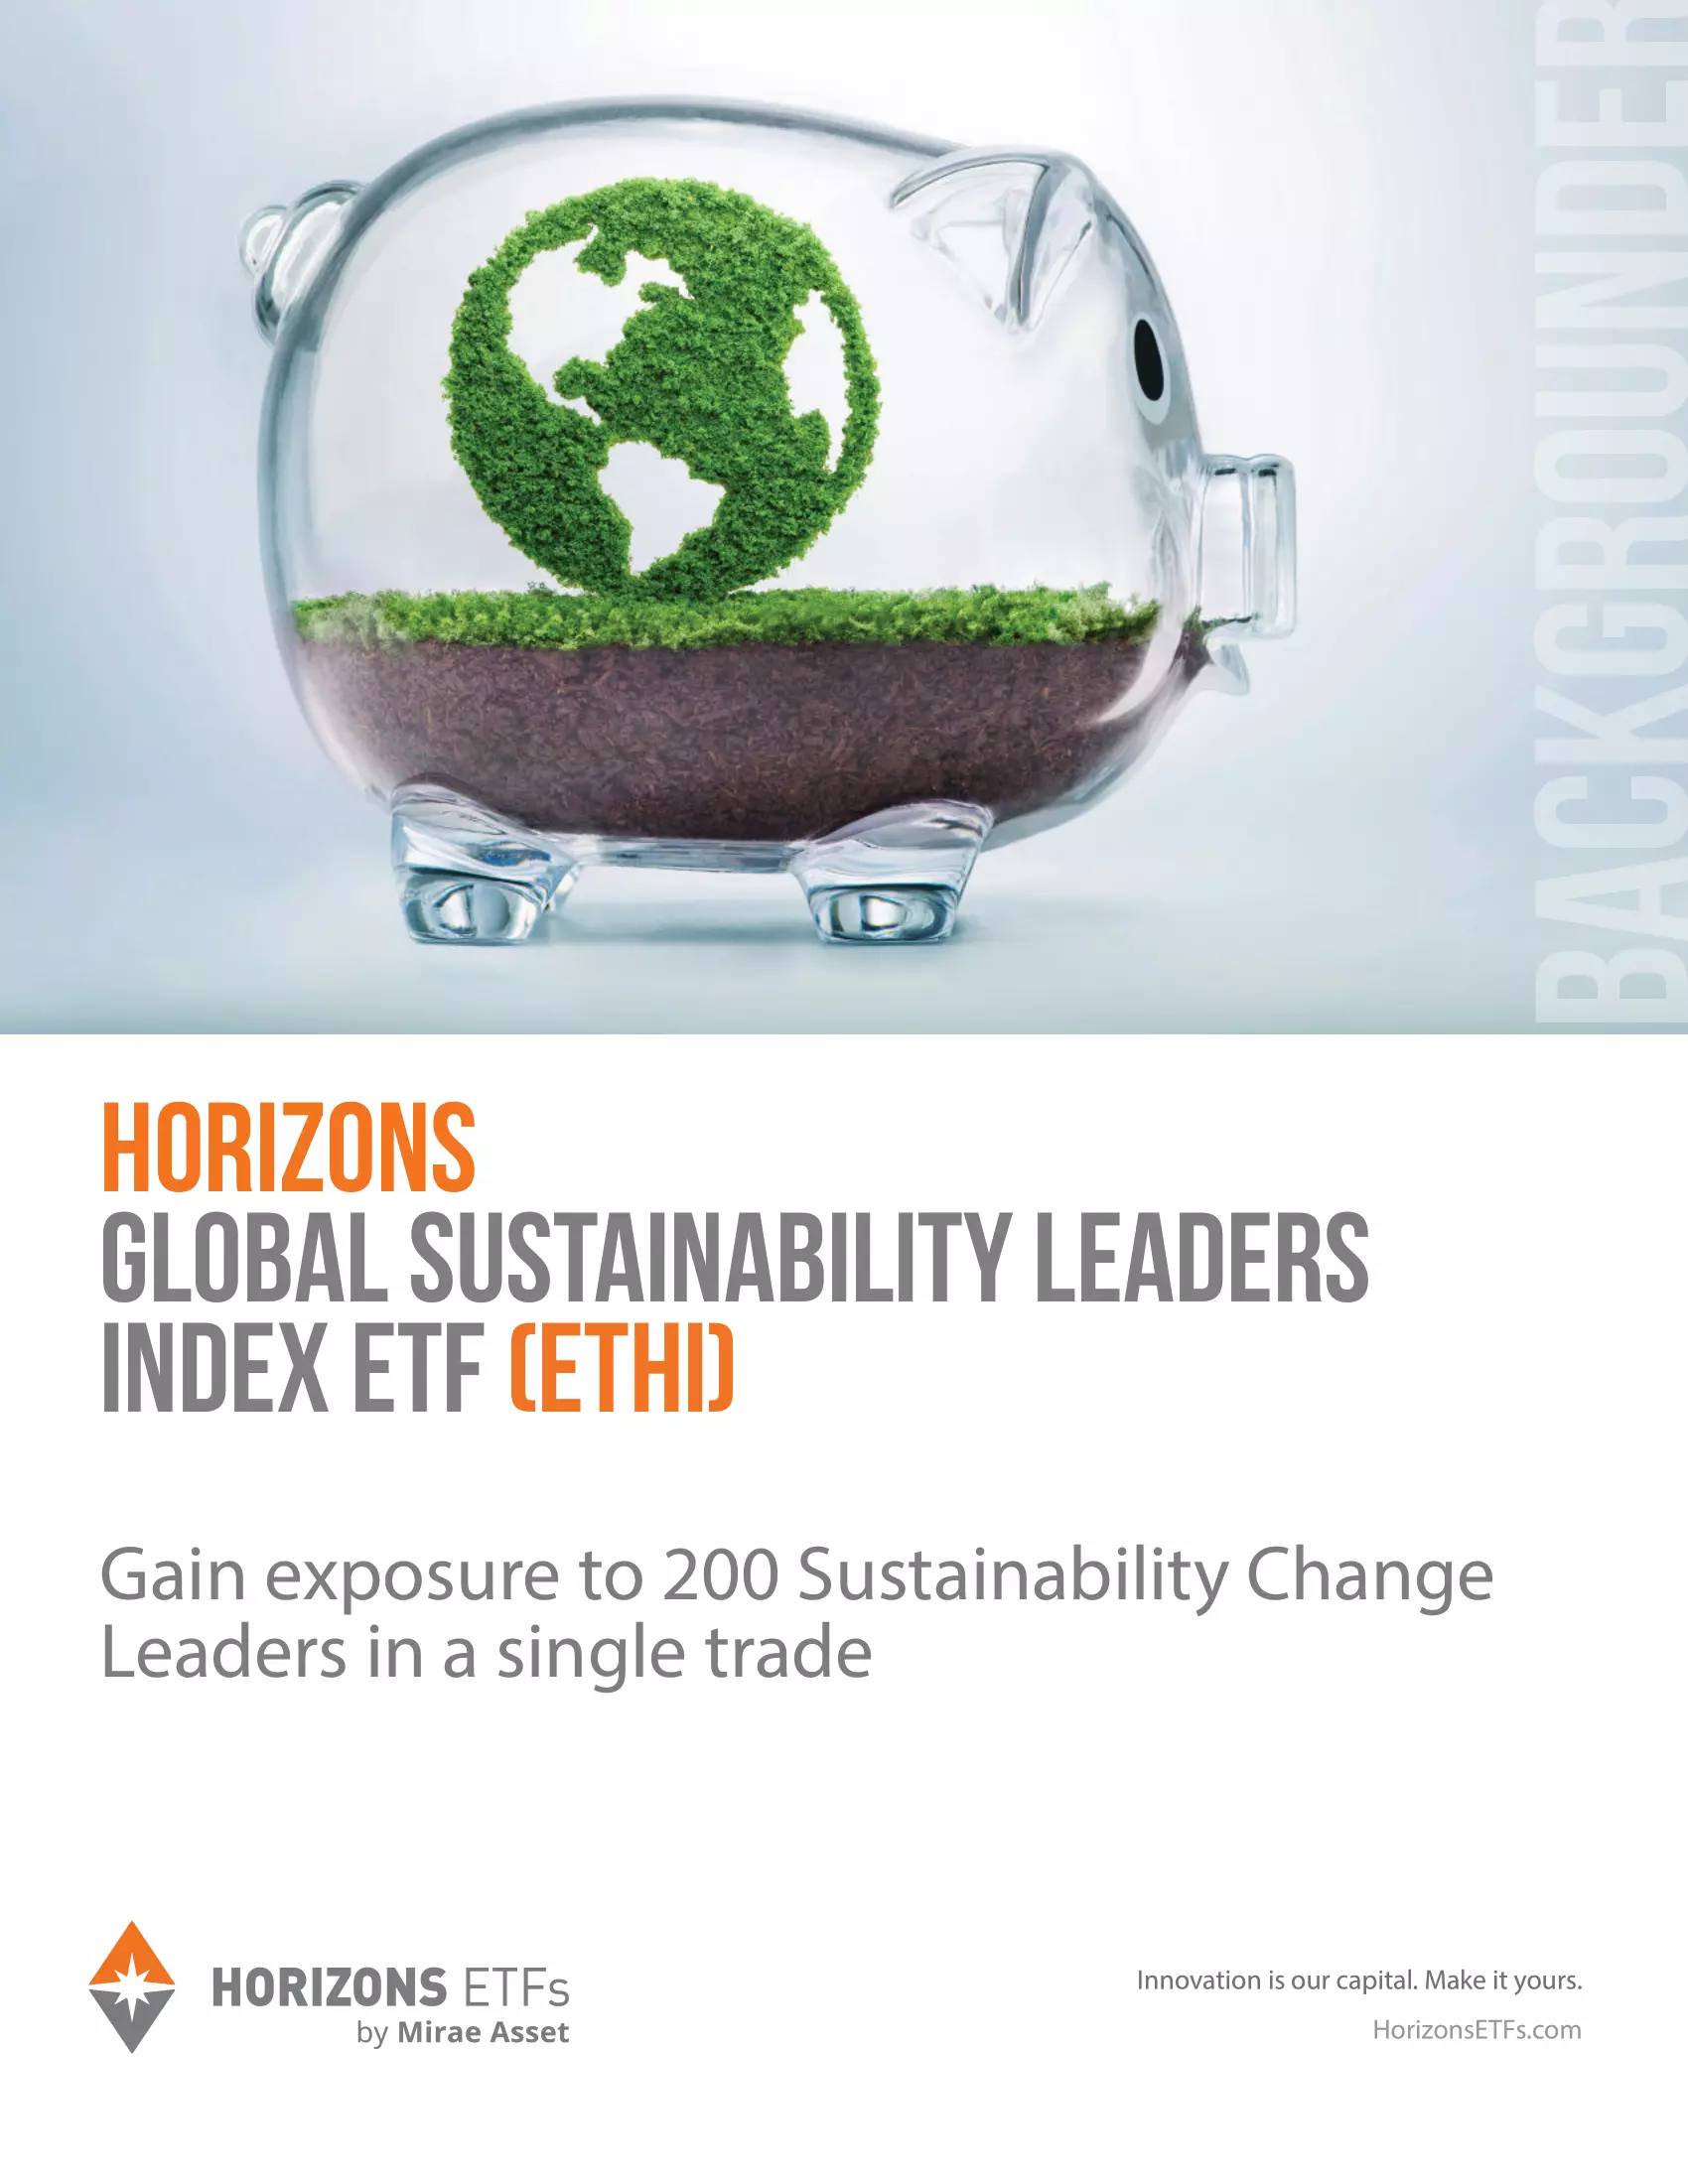 ETHI: Horizons Global Sustainability Leaders Index ETF